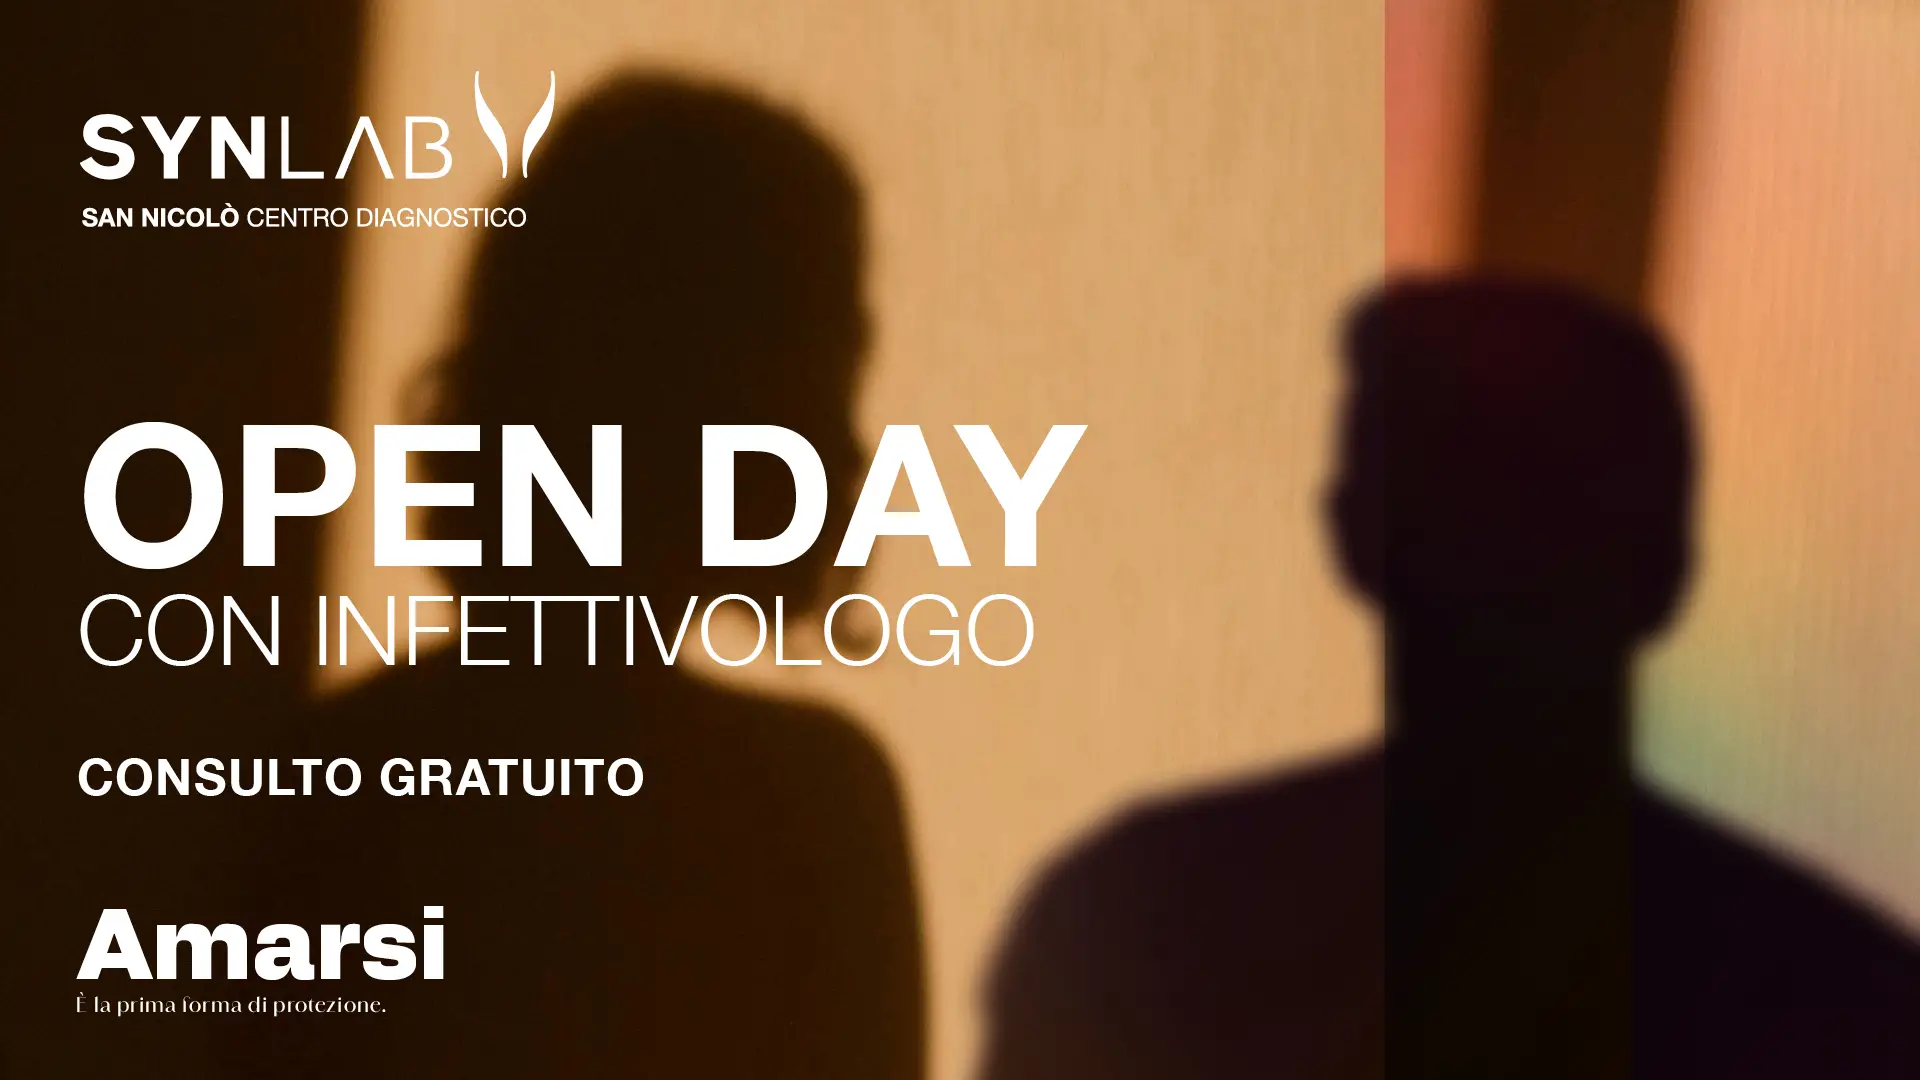 Open Day con Infettivologo, presso la sede SYNLAB San Nicolò di Lecco